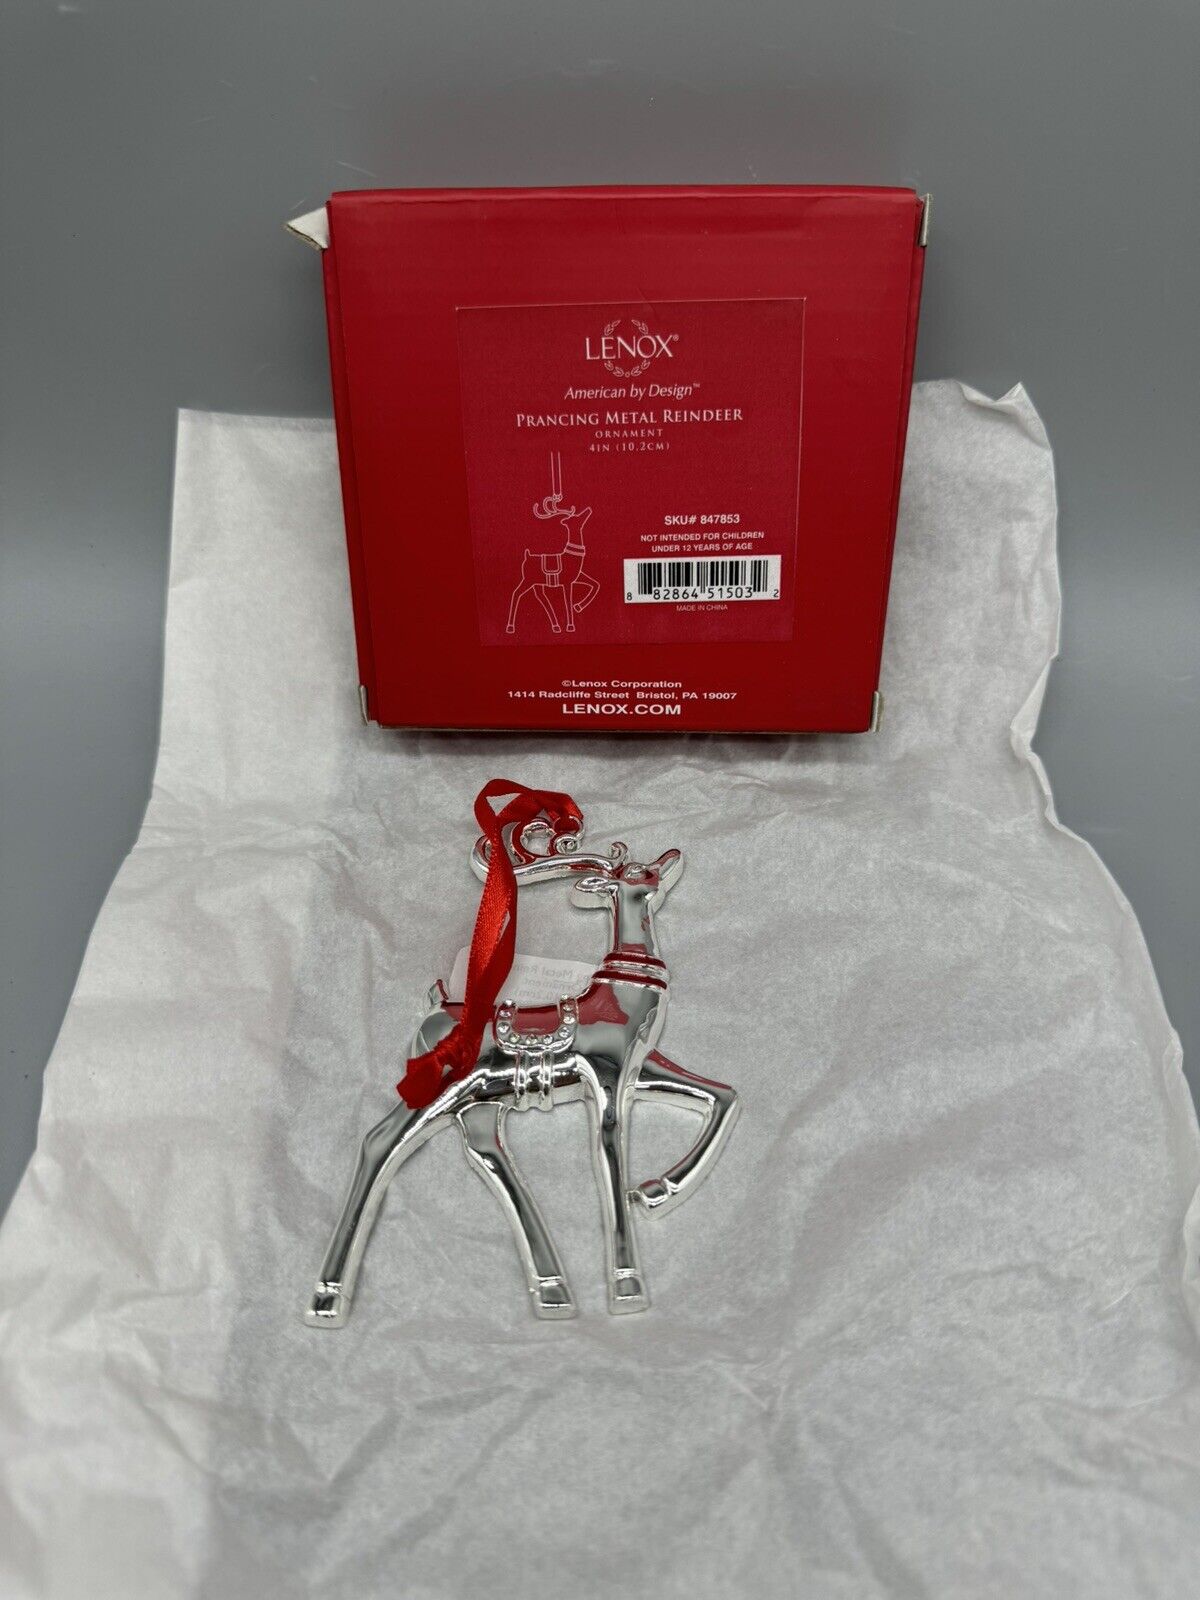 Lenox Prancing Metal Reindeer Ornament American By Design Sku#847853